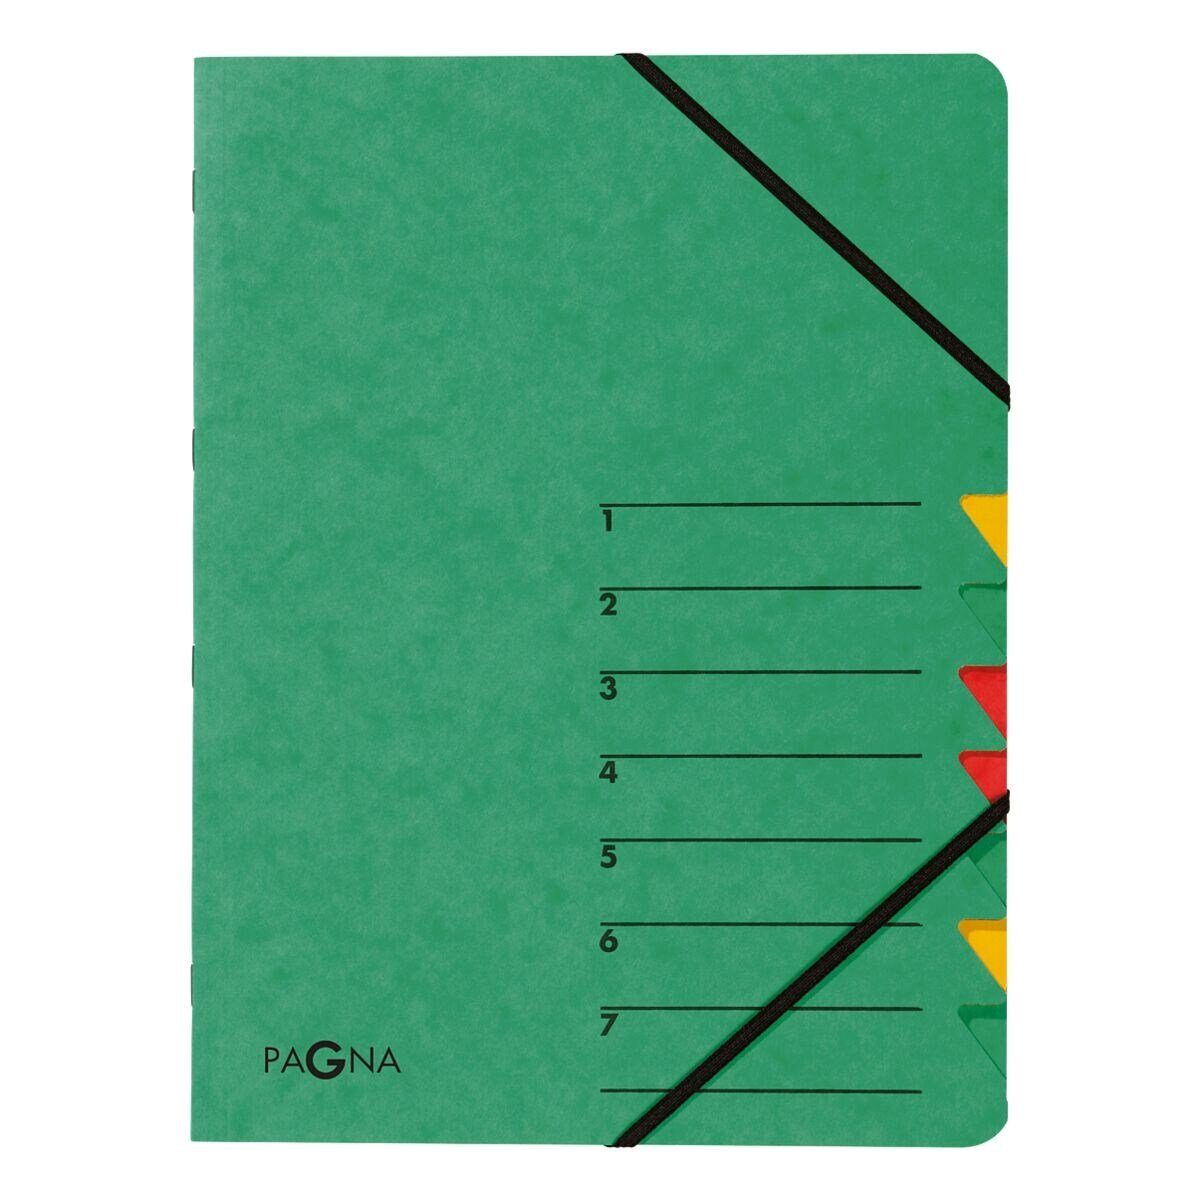 PAGNA Organisationsmappe Standard, Ordnungsmappe mit 7 Fächern, A4 grün